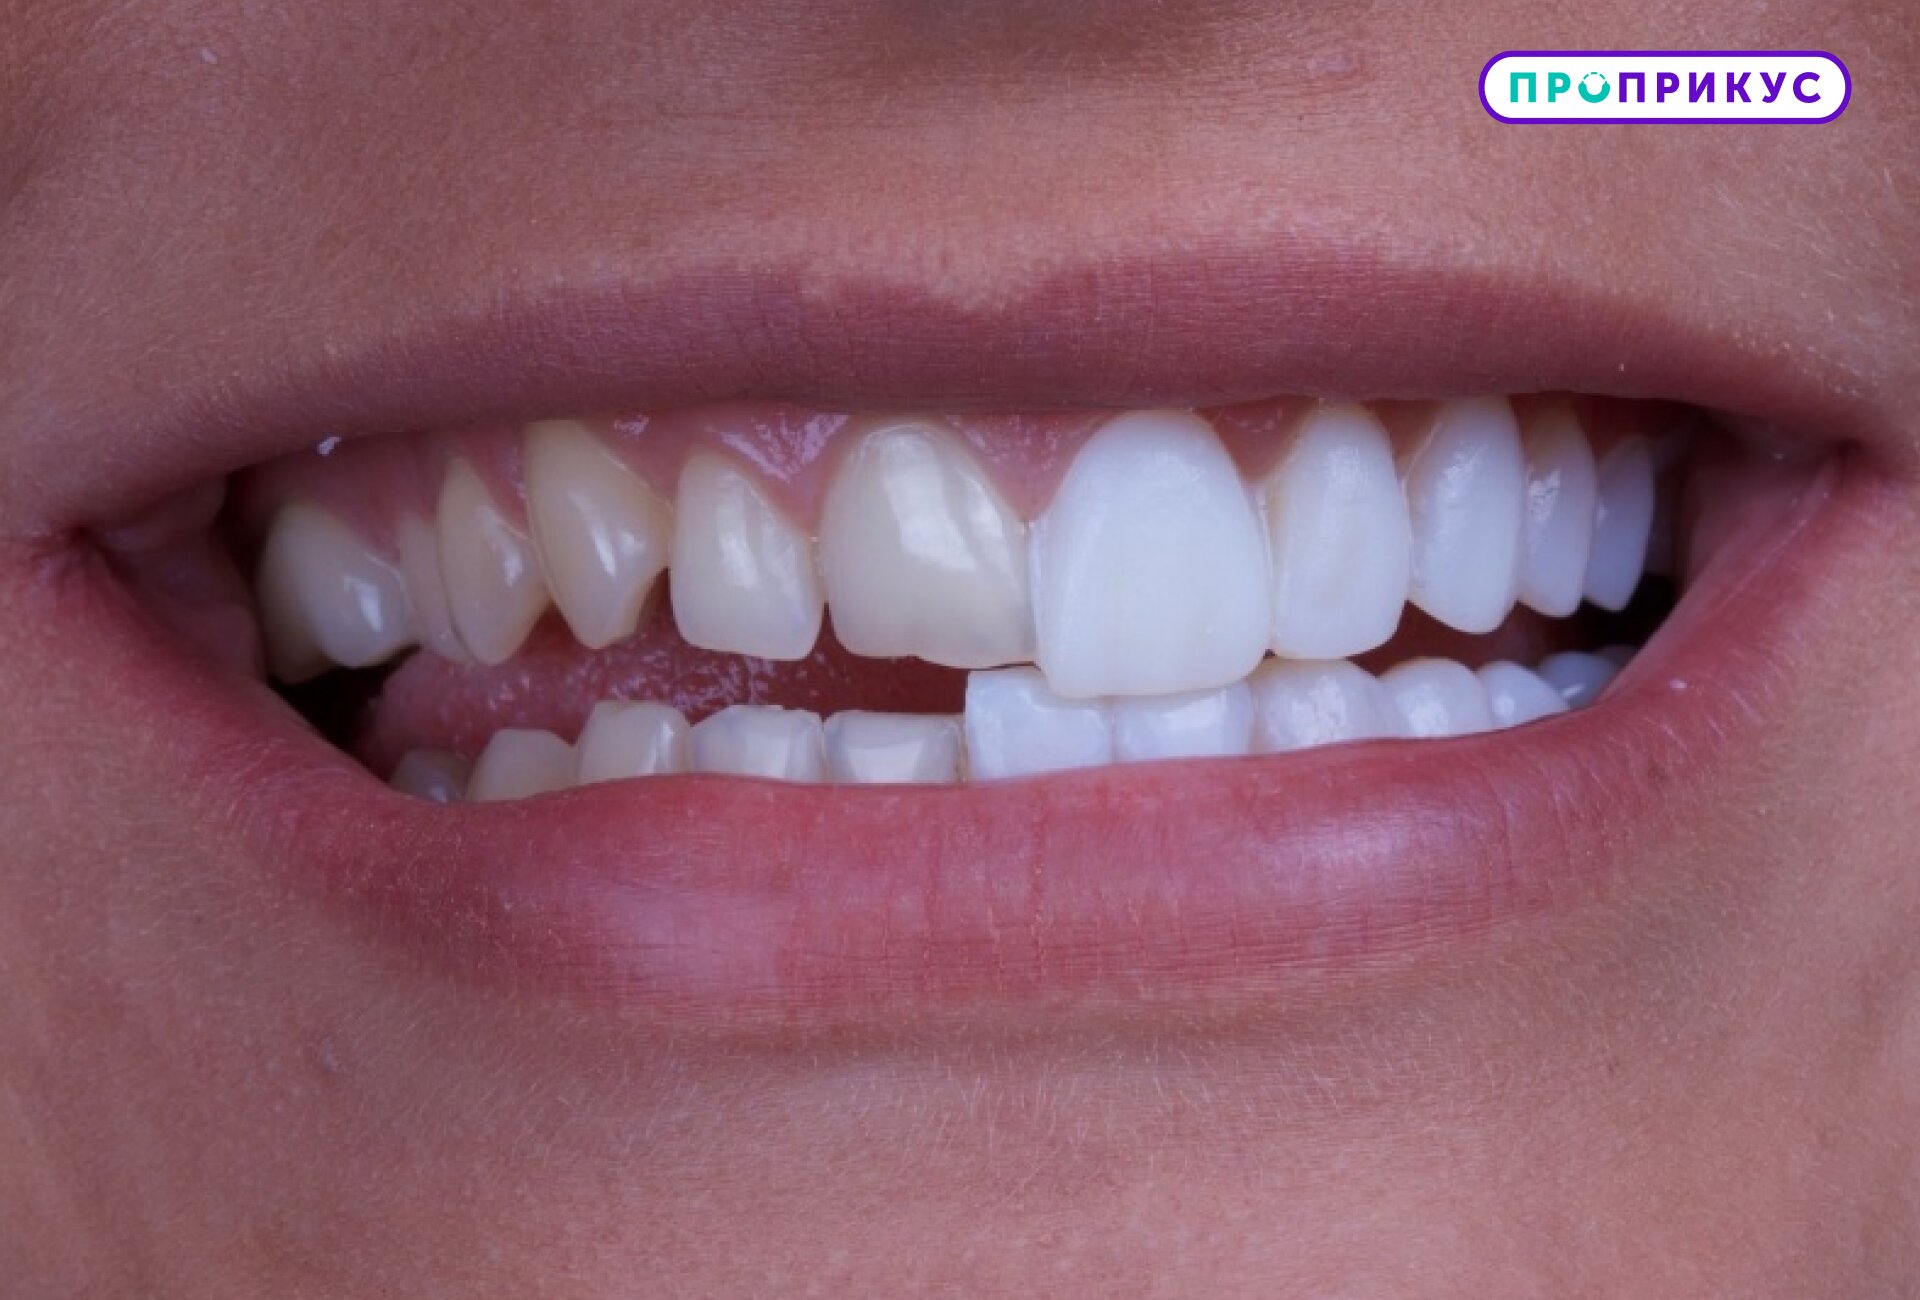 Сколько больных зубов можно вылечить за один прием?